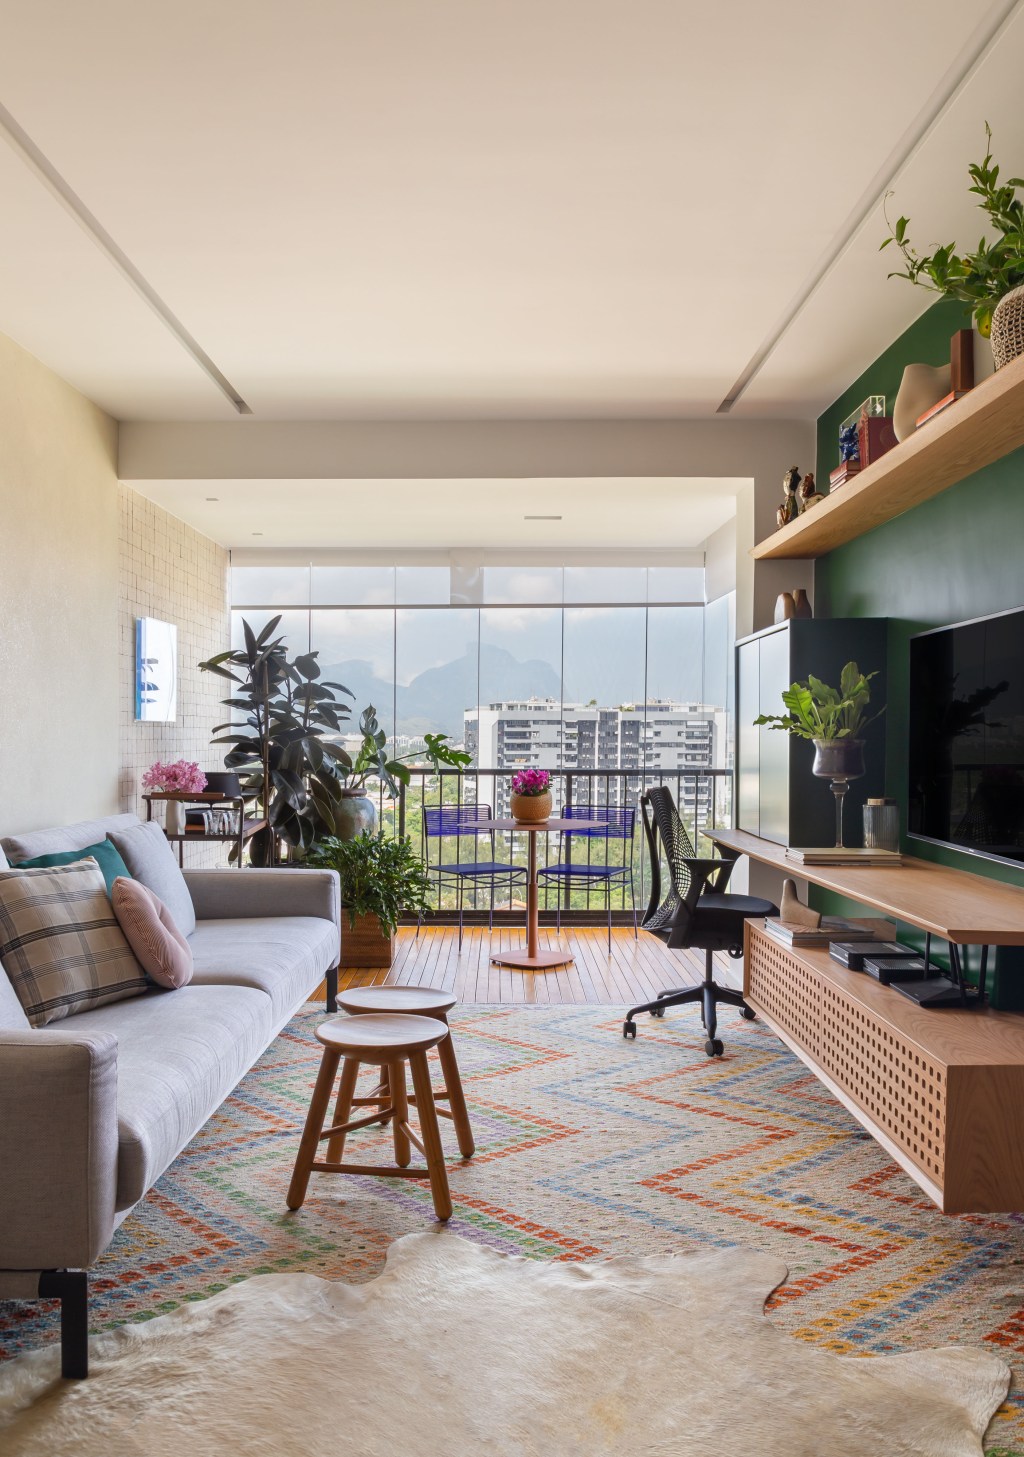 Apê 110 m2 cozinha retrô home office escondido Kelly Figueiredo decoracao apartamento sala varanda tv tapete sofa